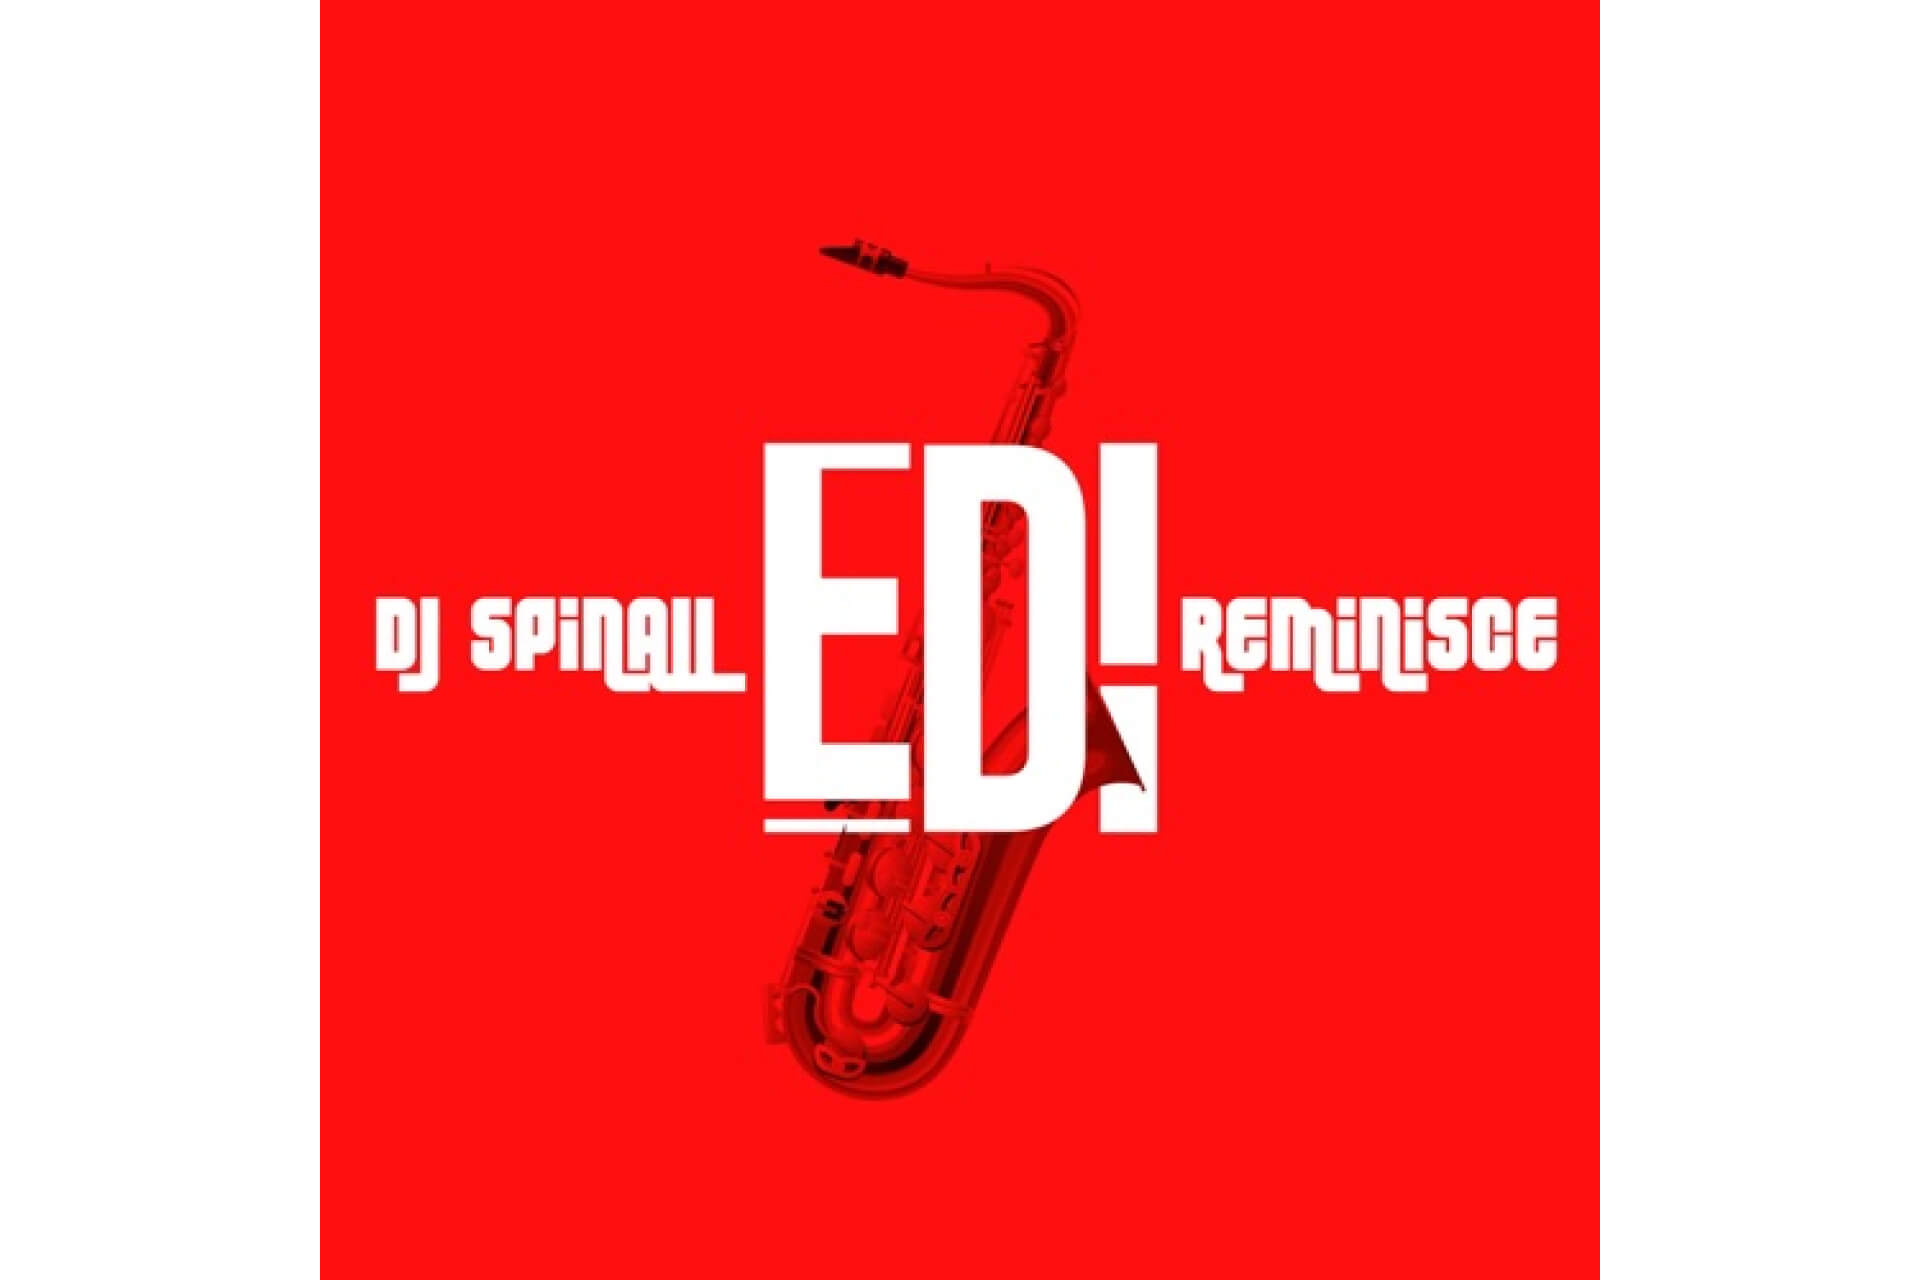 DJ Spinall - Edi